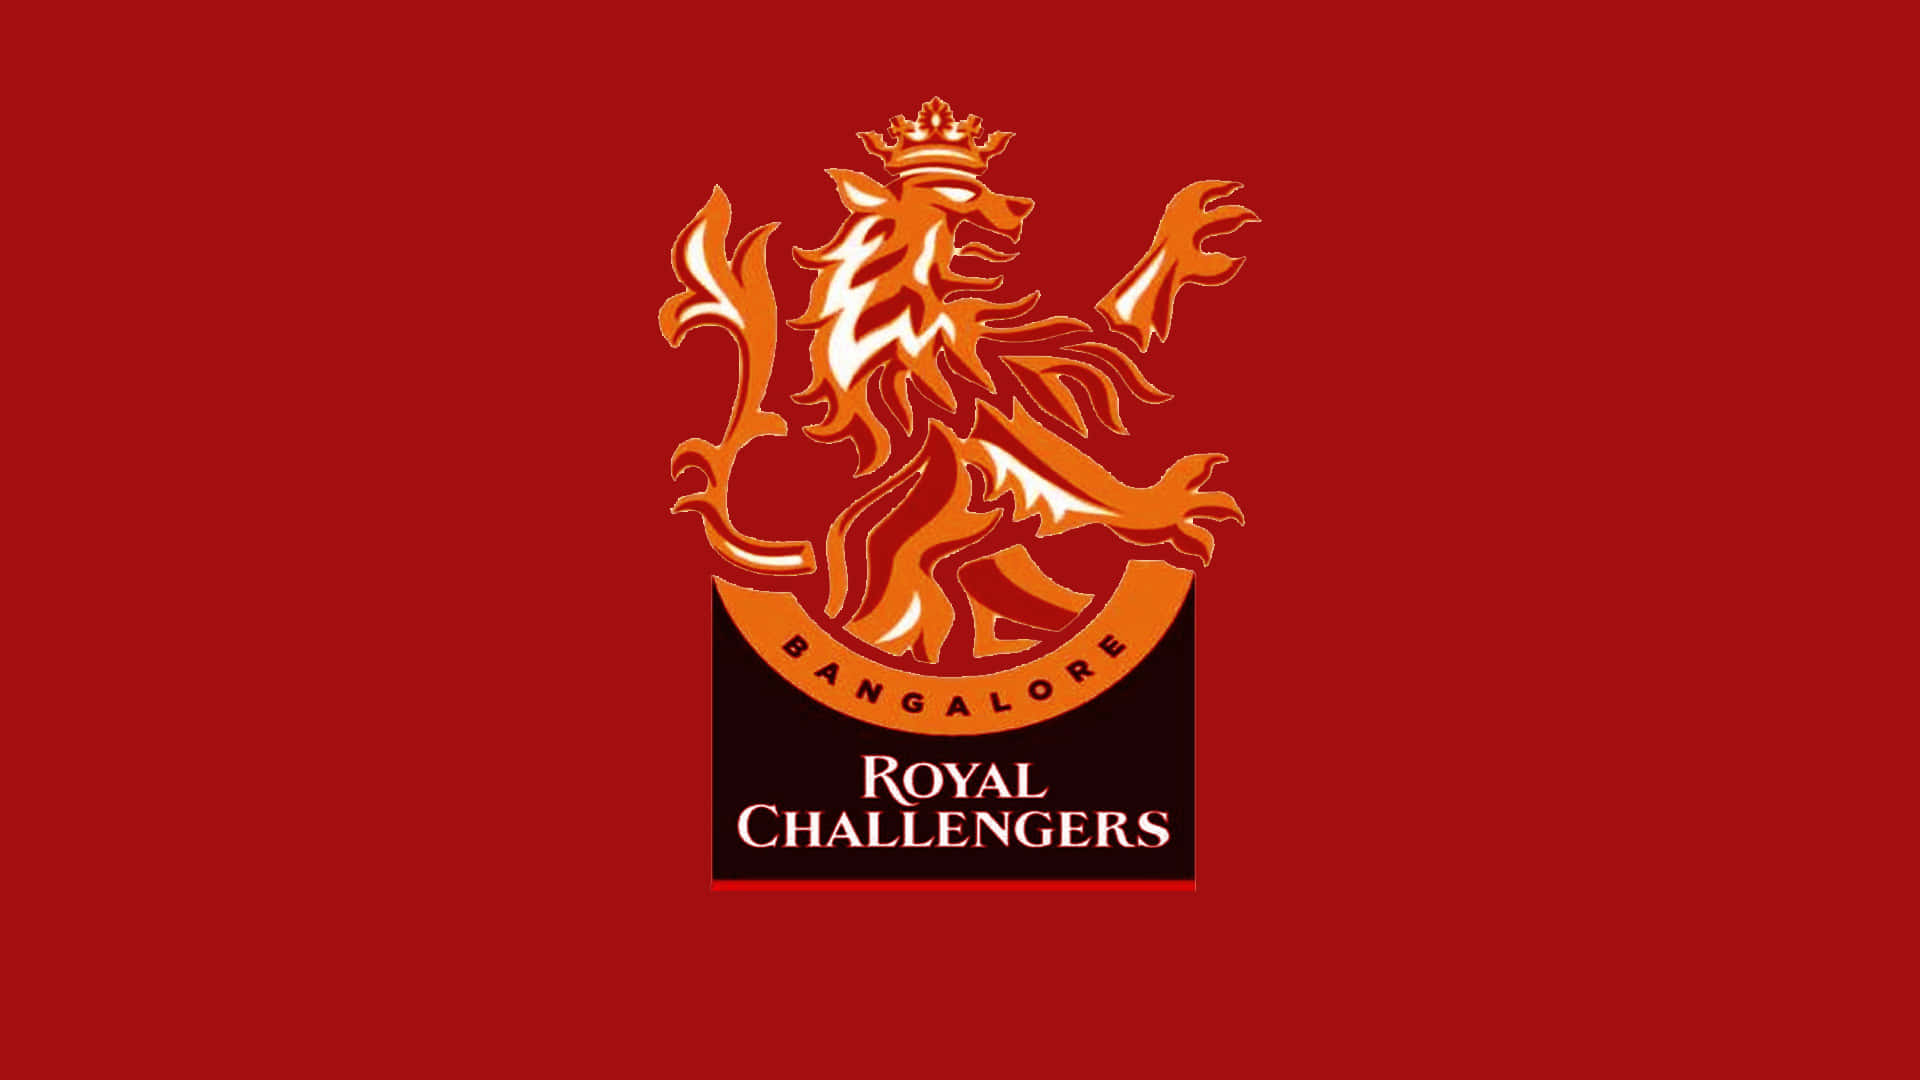 Larosa Dei Royal Challengers Bangalore Per L'ipl 2020.